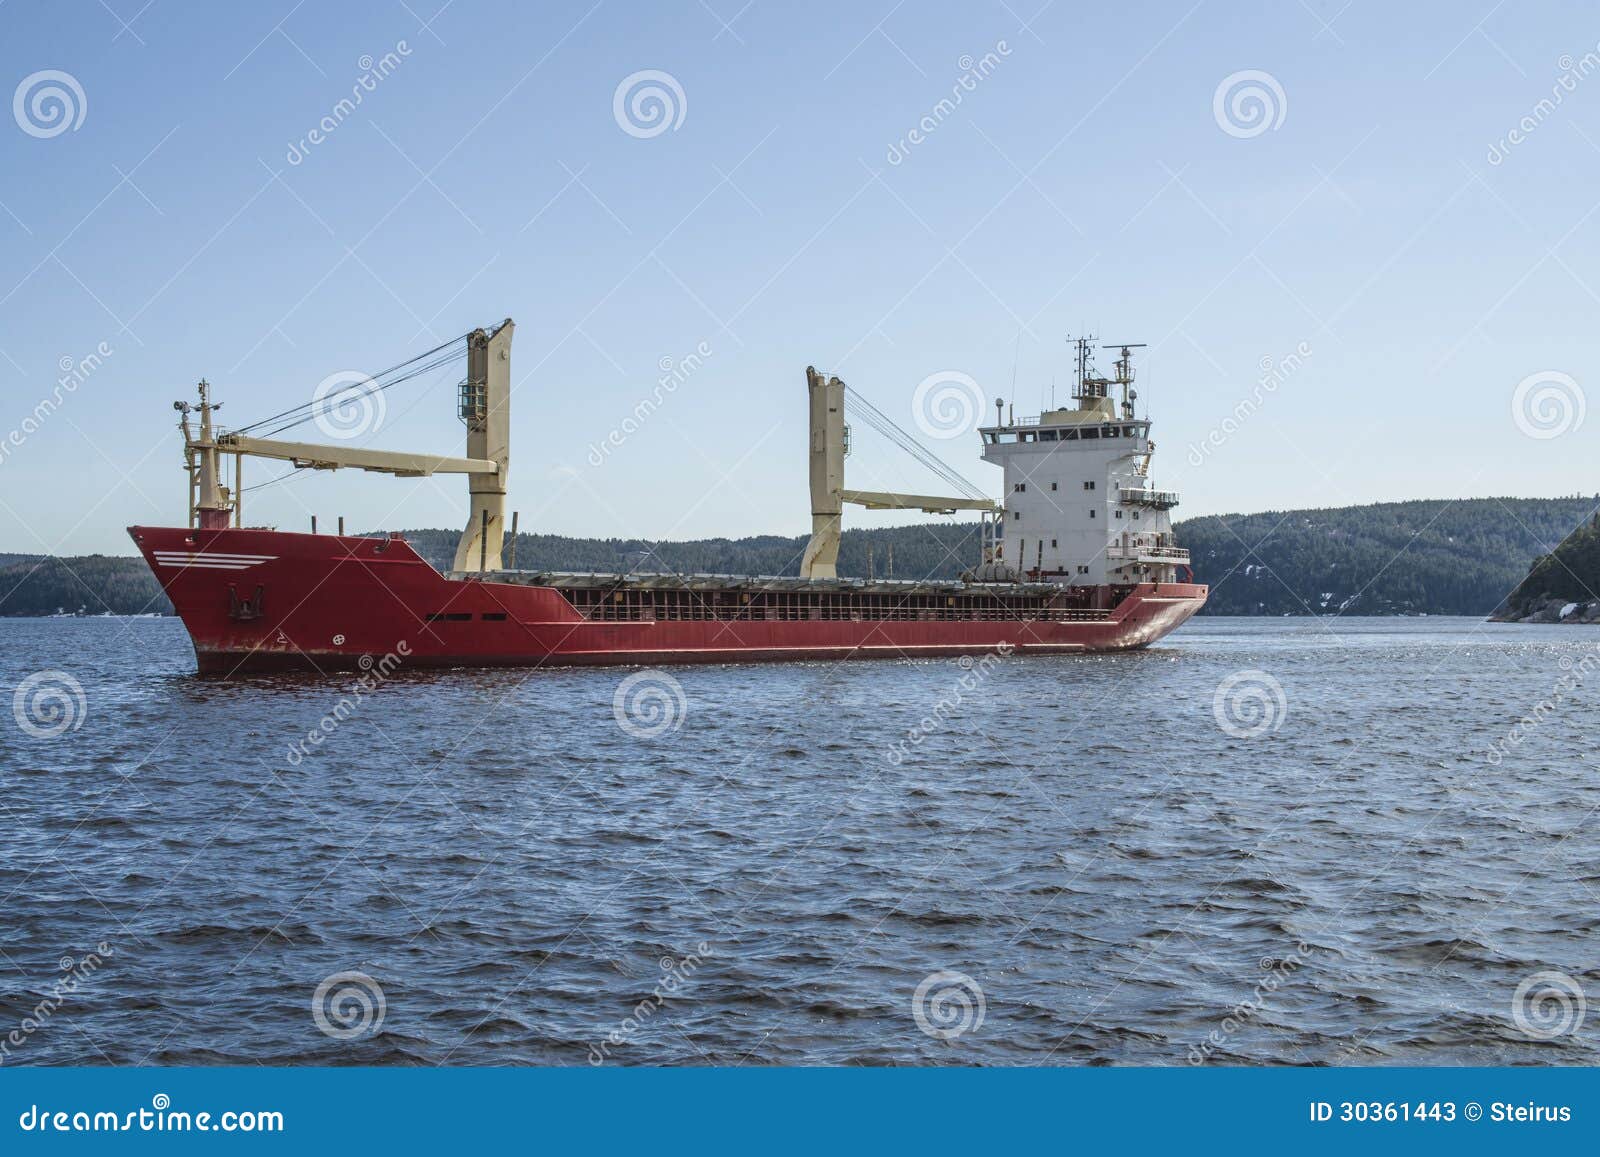 mv landy, ship type: general cargo, flag: norway